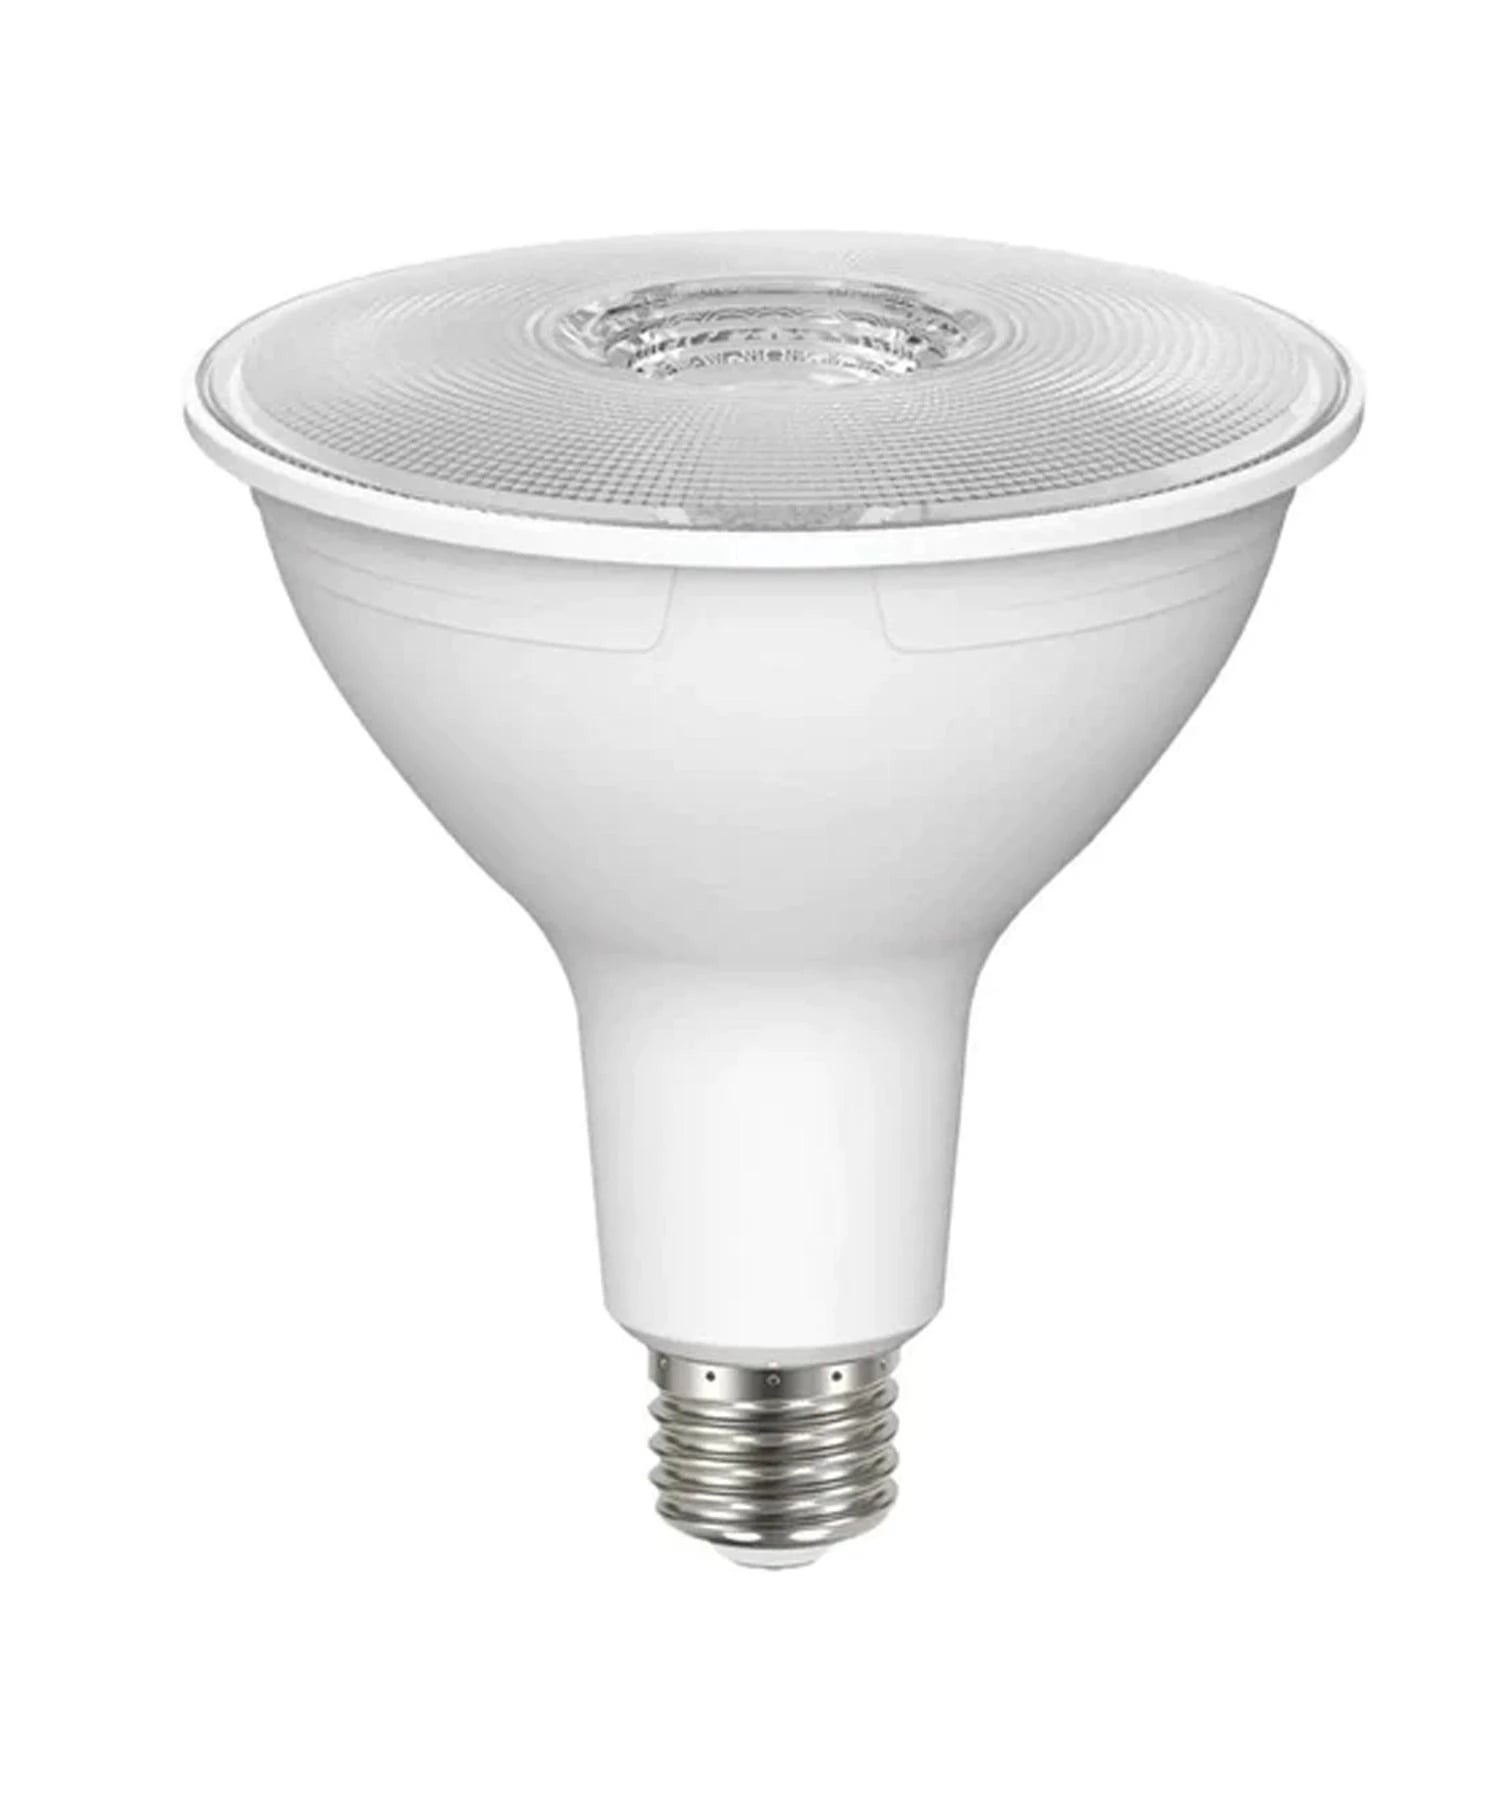 LED Flood and Spot Light Bulbs